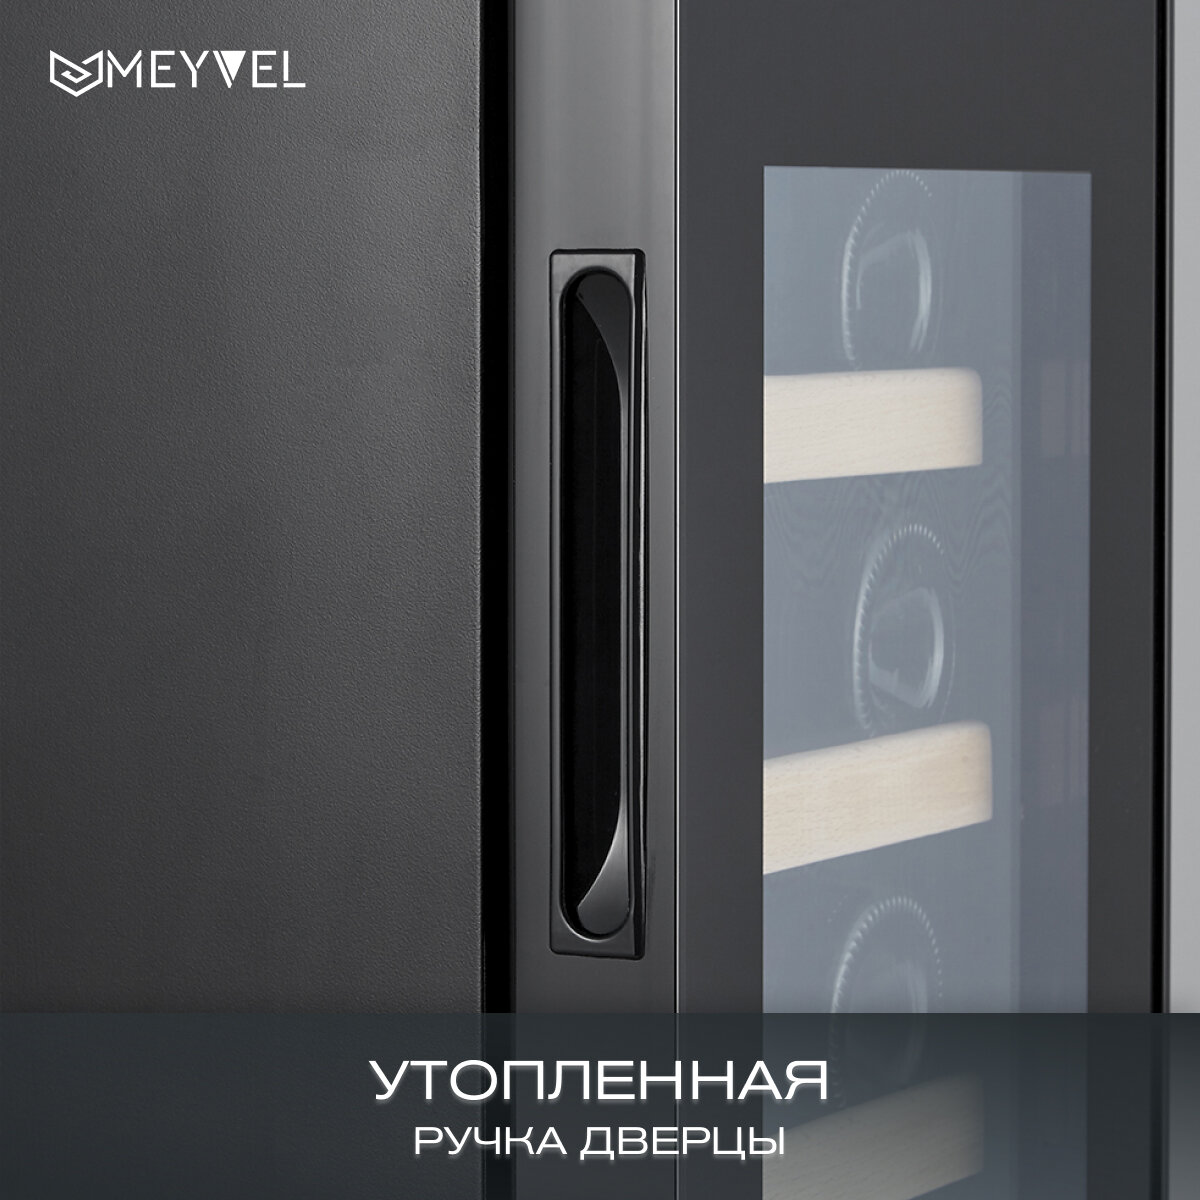 Винный холодильный шкаф Meyvel MV19-KBF2 компрессорный (встраиваемый / отдельностоящий холодильник для вина на 19 бутылок)